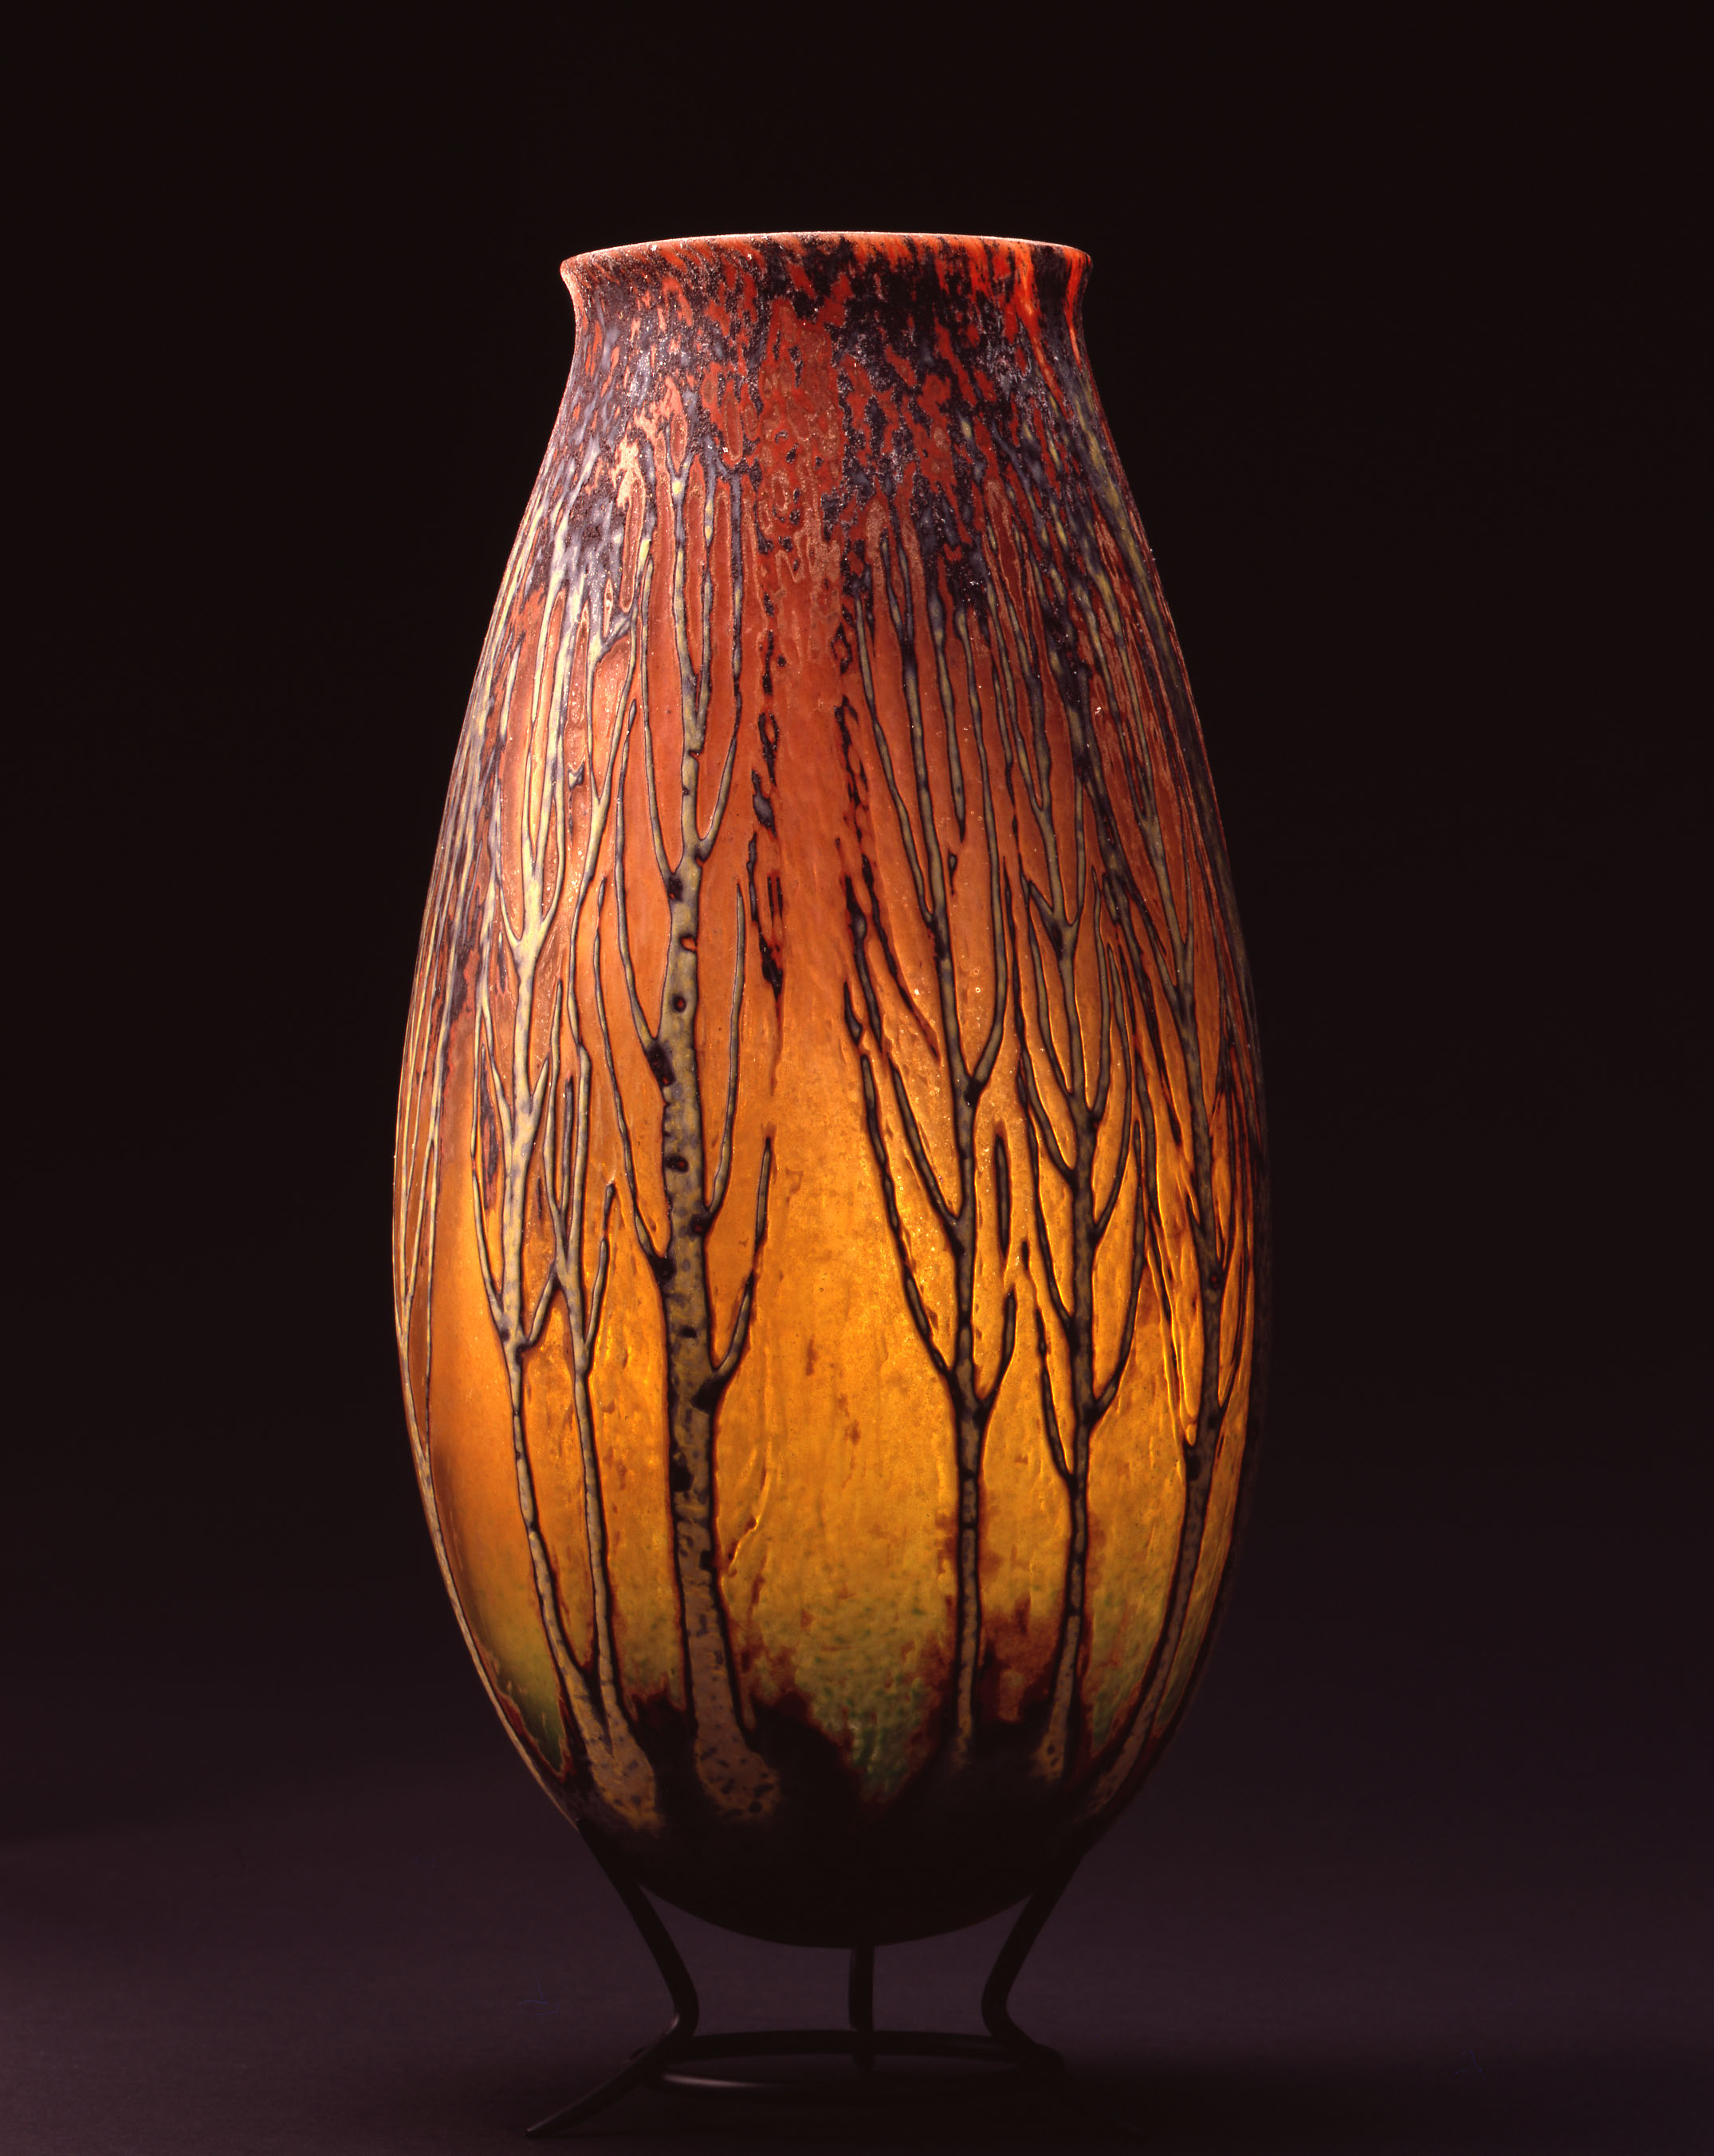  William Morris,&nbsp; Vase with Poplar Tree Grove  &nbsp; (2004, glass, 15 x 7 1/8 x 7 1/8 inches), WM.33 